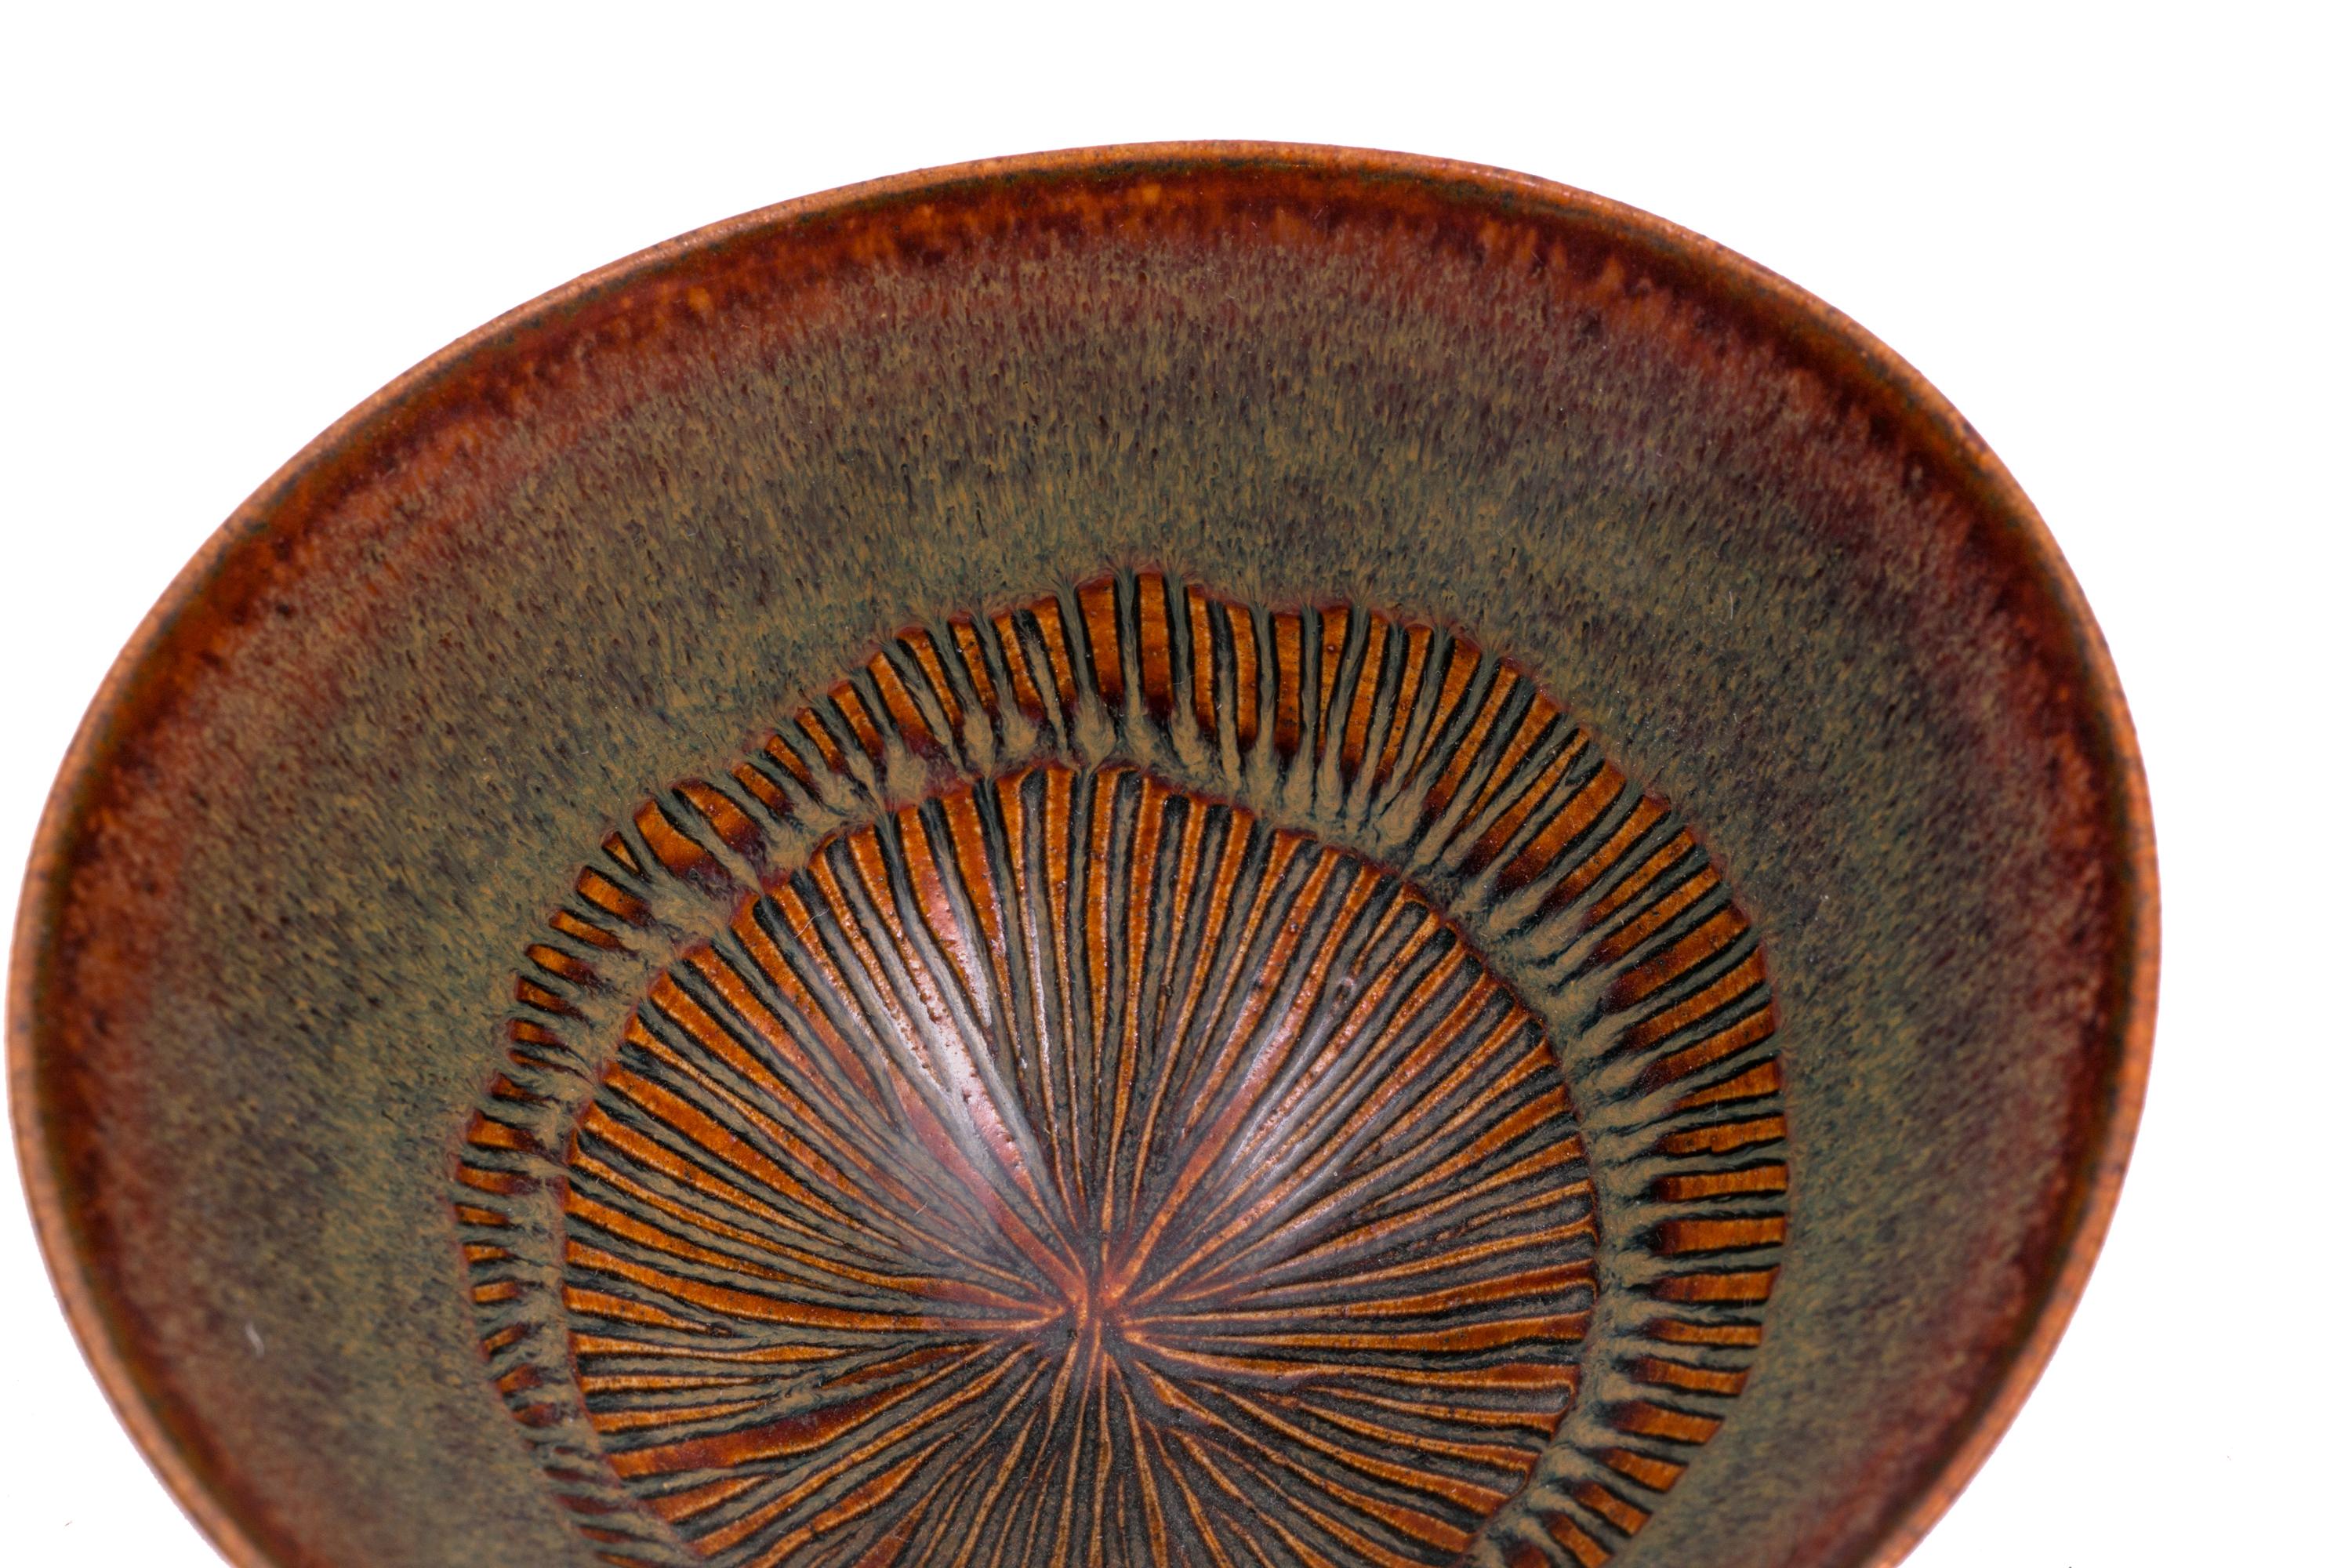 Mid-20th Century Stig Lindberg Signed Glazed Ceramic Bowl for Gustavberg, Sweden, 1950s